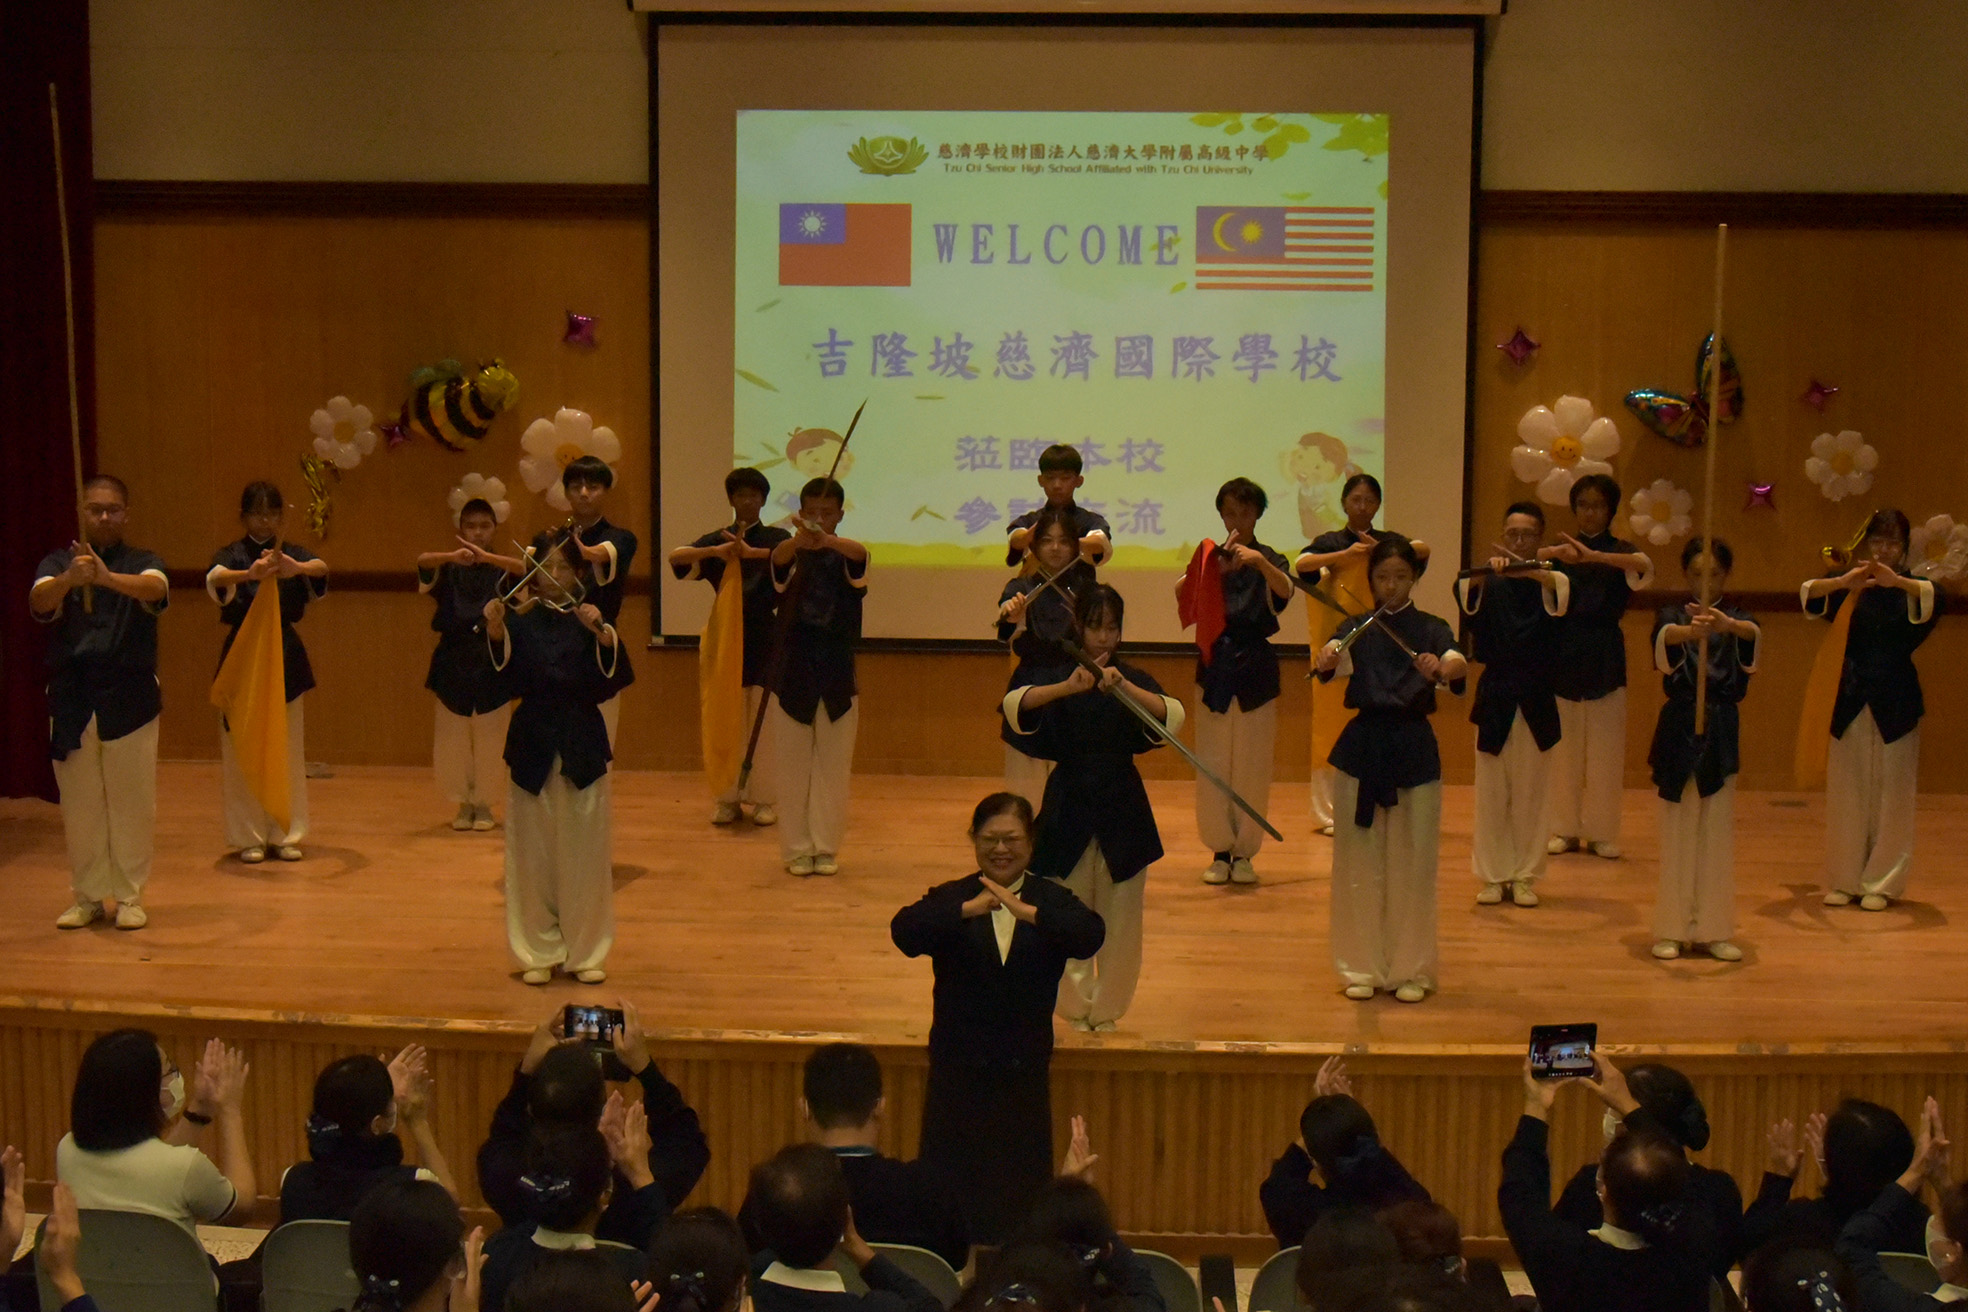 慈大附中國術隊在今年暑假曾到馬來西亞交流，在歡迎儀式上以國術套路與兵器展現融合武術與人文精神，迎接來自馬來西亞的同學們。